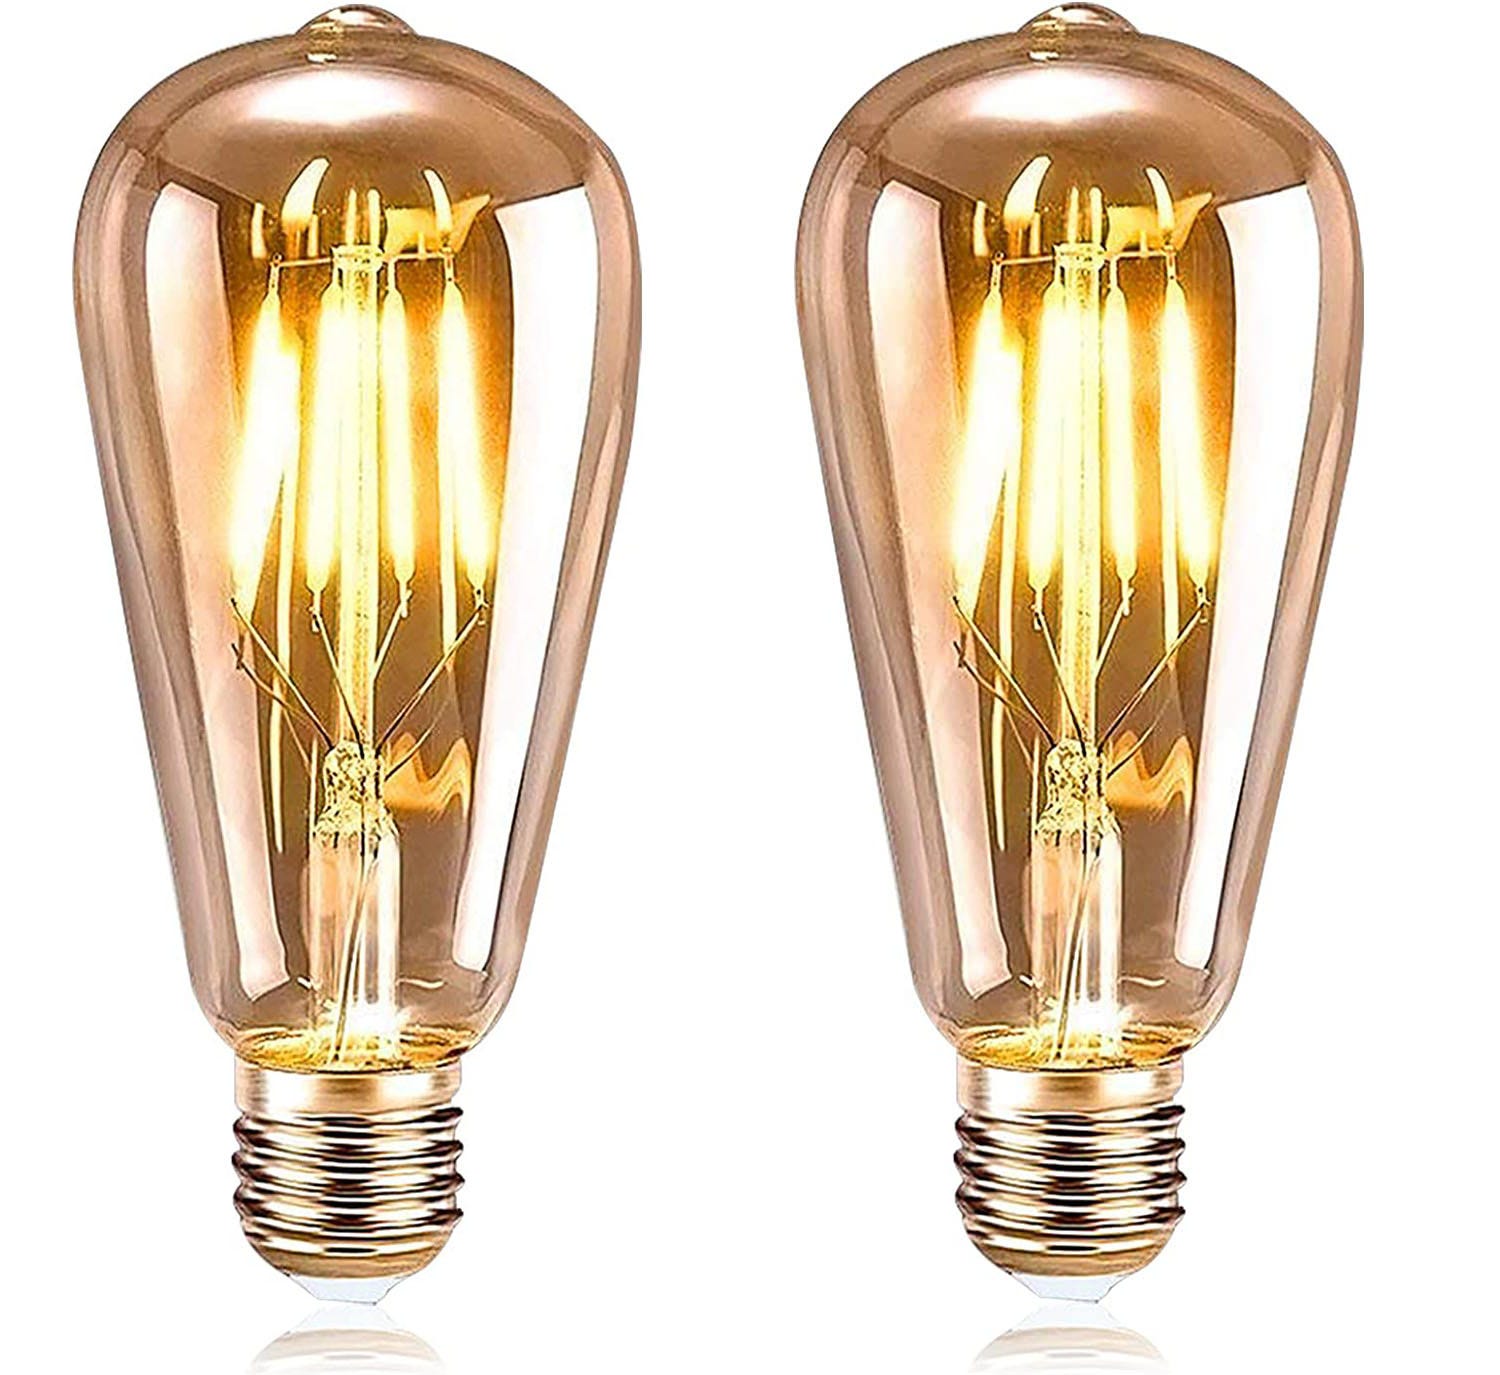 Ampoule Vintage E27, 2 Ampoule LED Edison E27 ST64 Lampe Décorative -6W  Filament Blanc Chaud pour Restaurant Cafe Bar